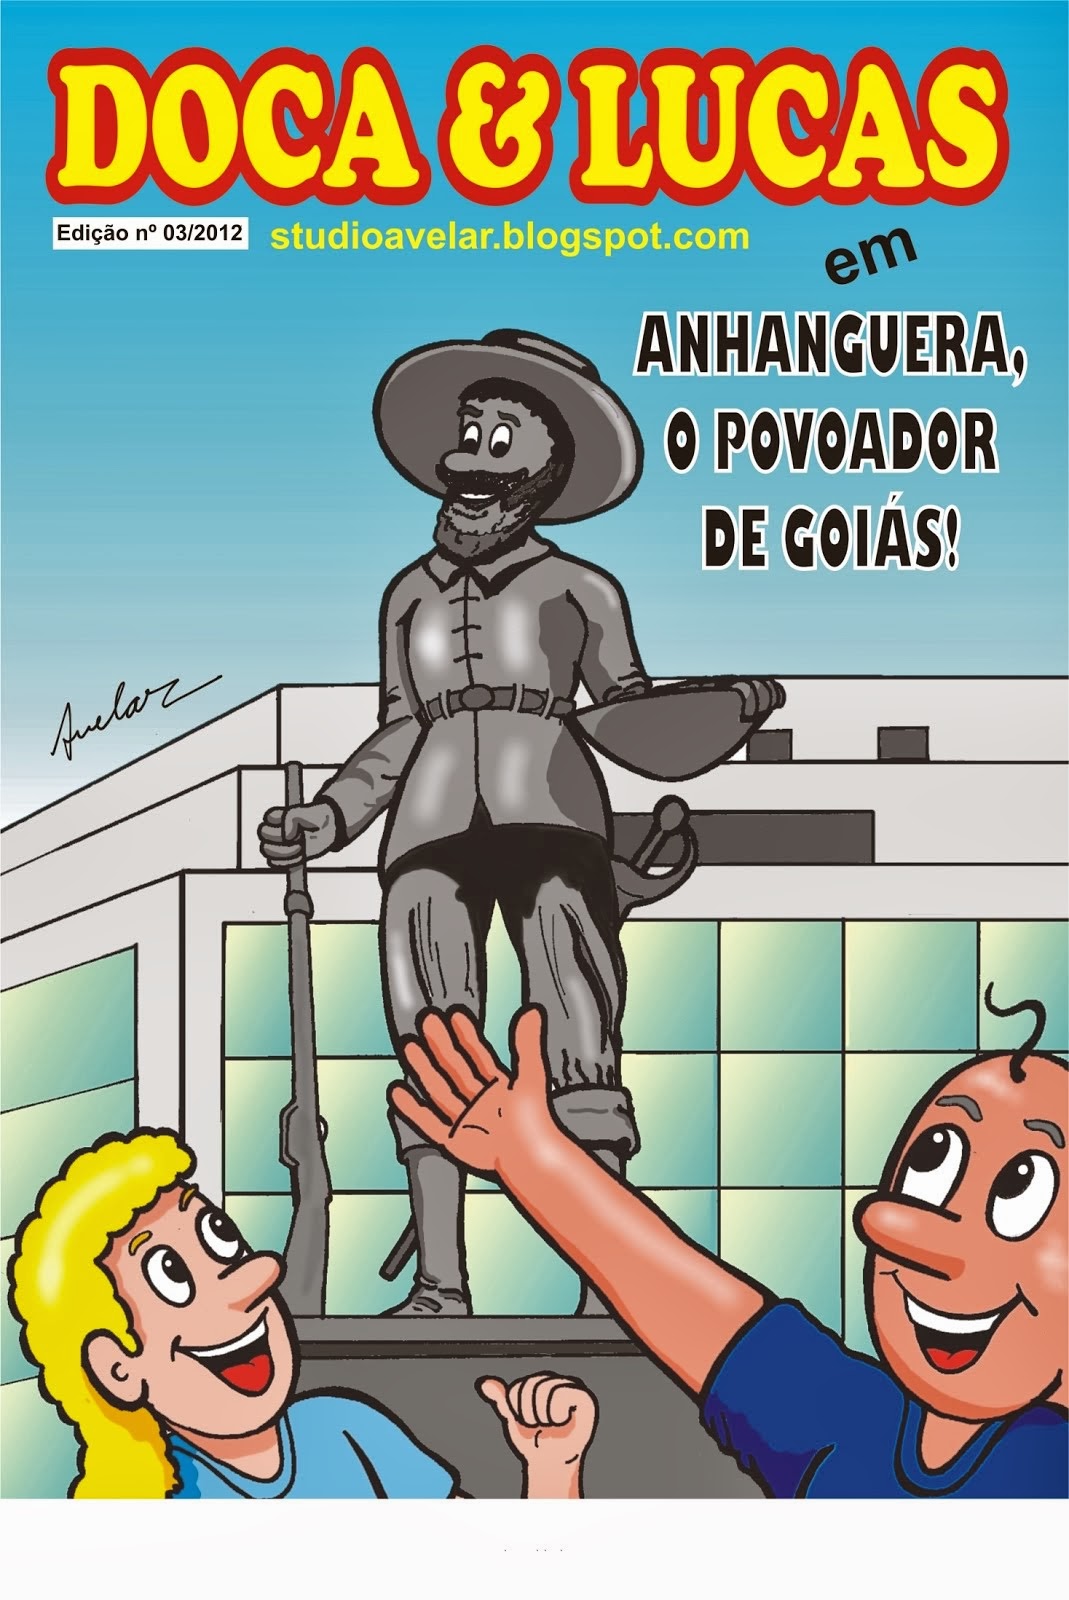 Anhanguera, o povoador de Goiás